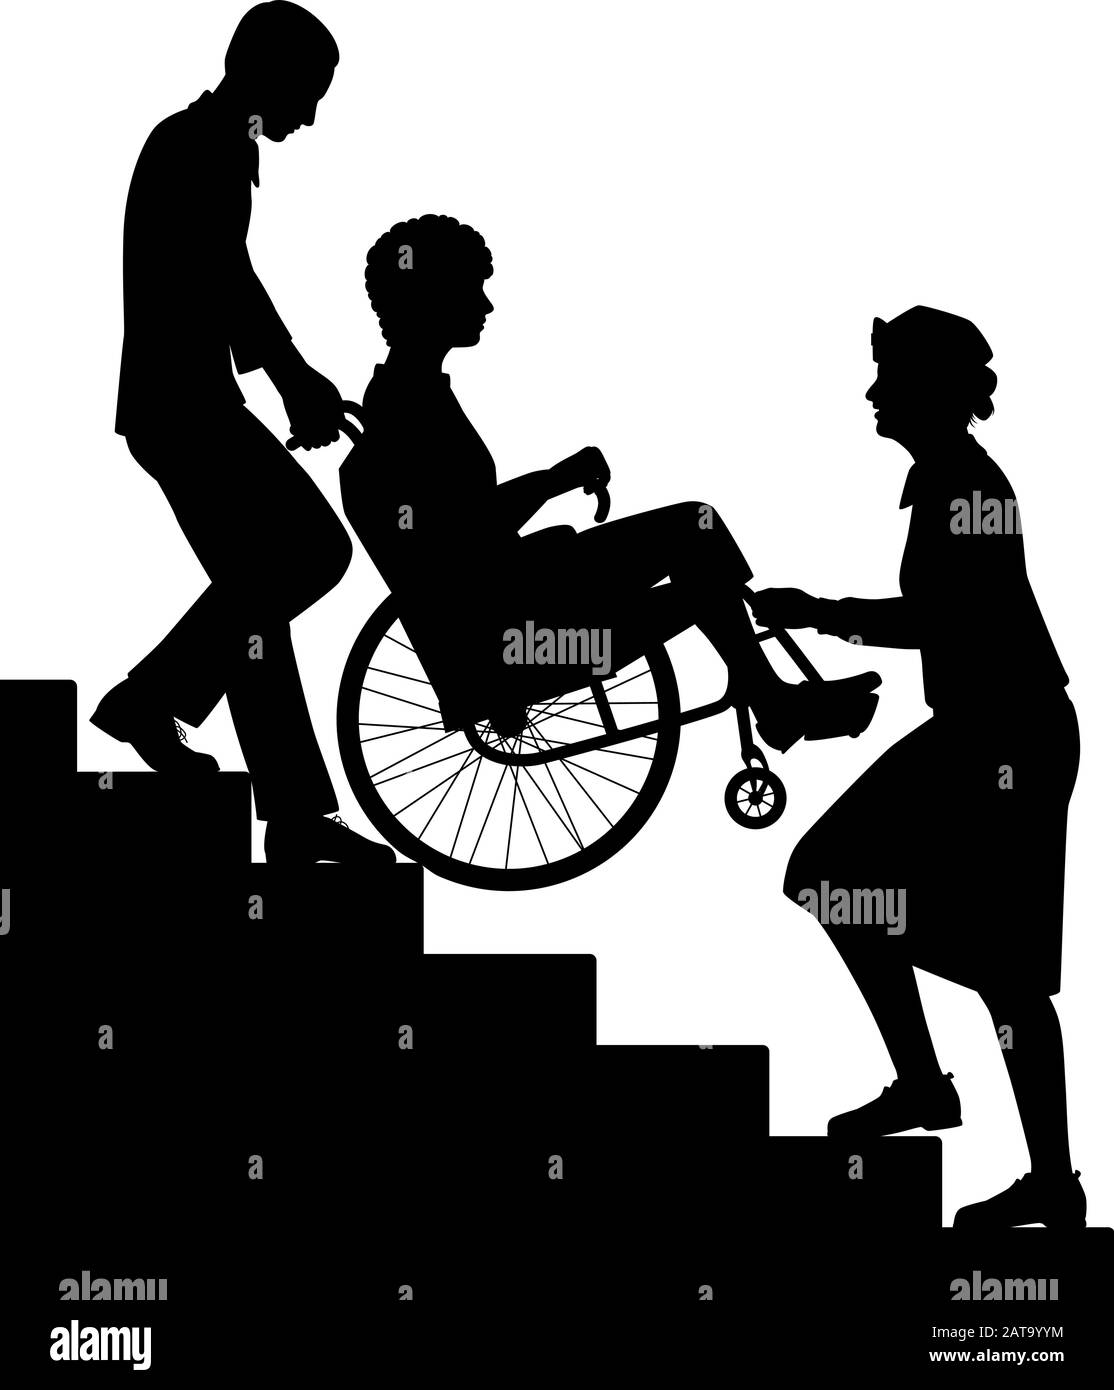 Sagoma vettoriale modificabile di due persone che trasportano un paziente su una sedia a rotelle con tutte le figure come oggetti separati. Illustrazione Vettoriale